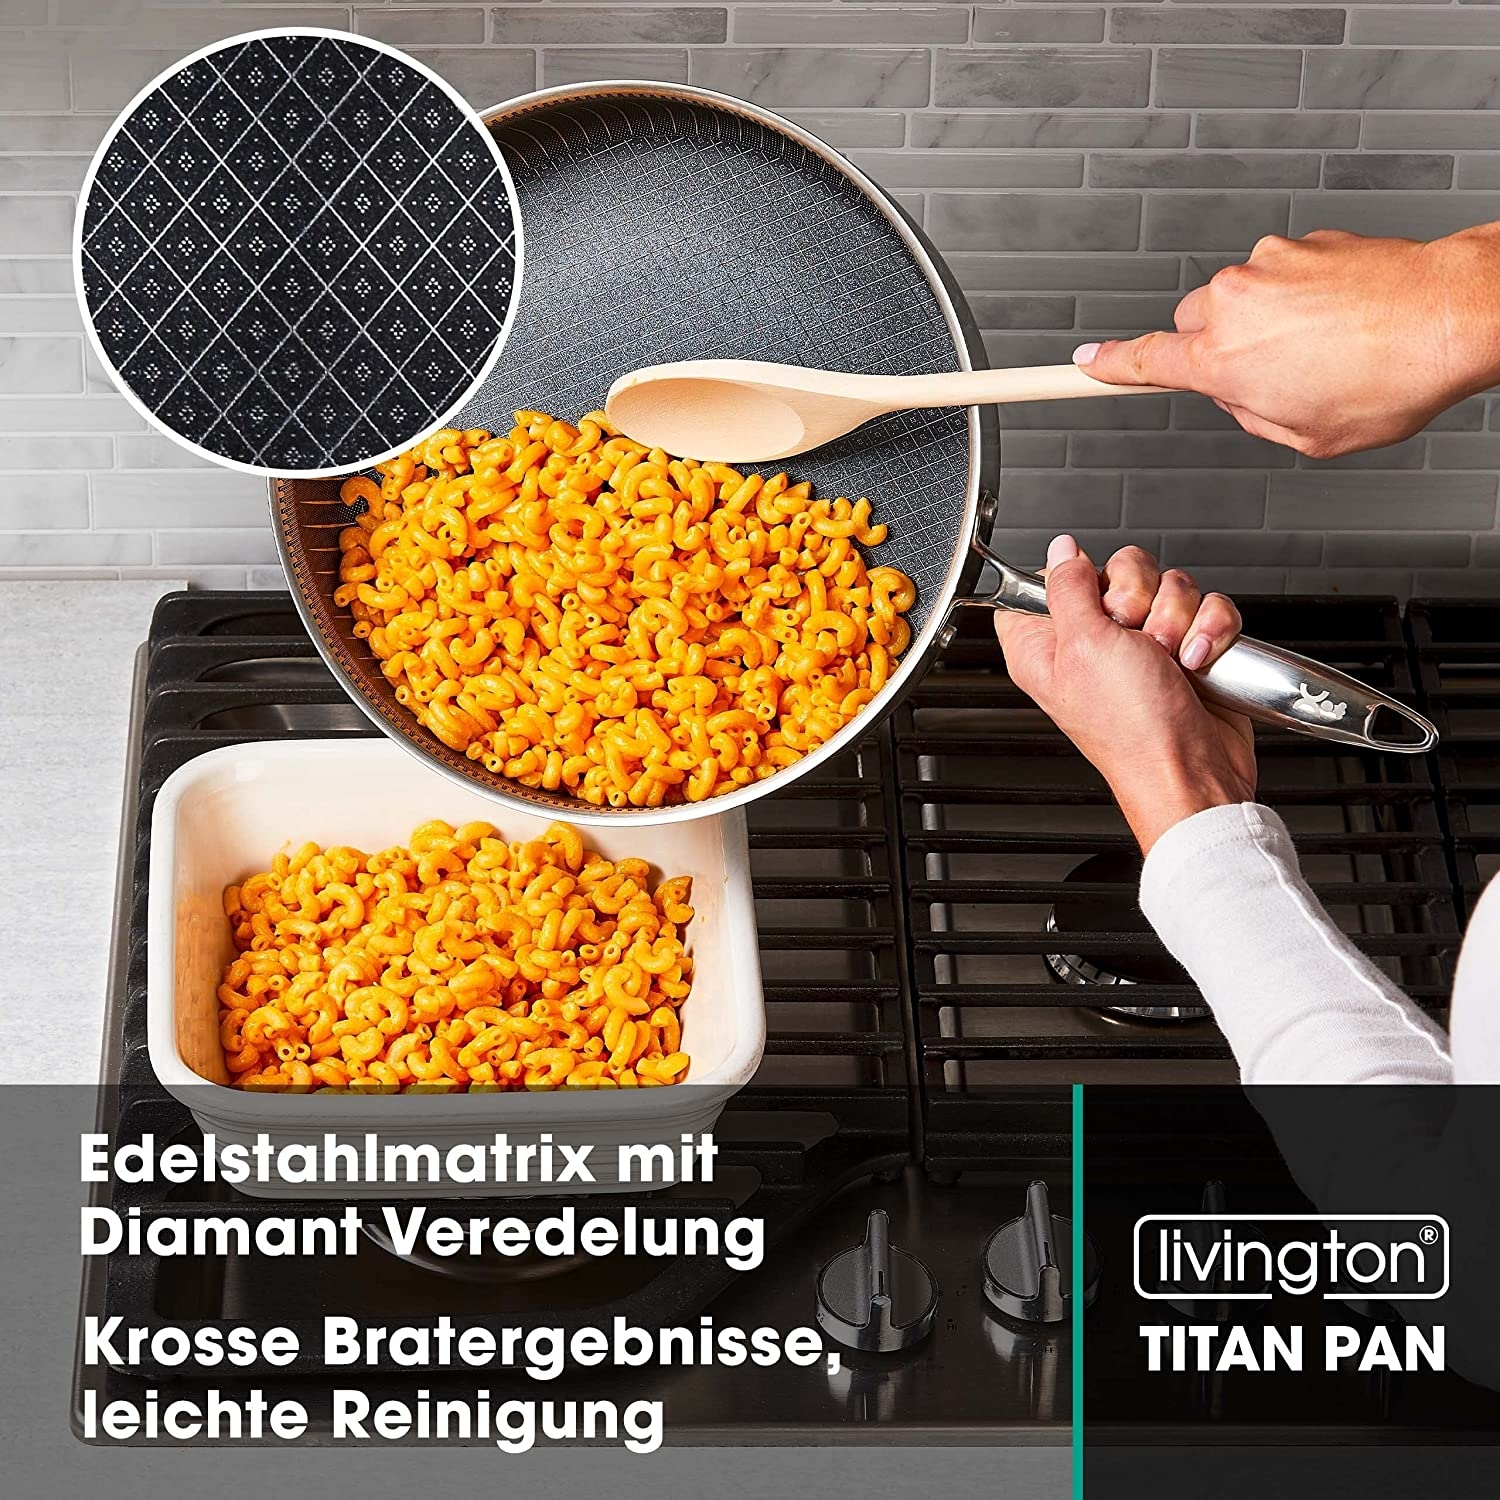 LIVINGTON Titan Pan 28cm Beschichtung: Set (Edelstahl, Pfannen Titanium)